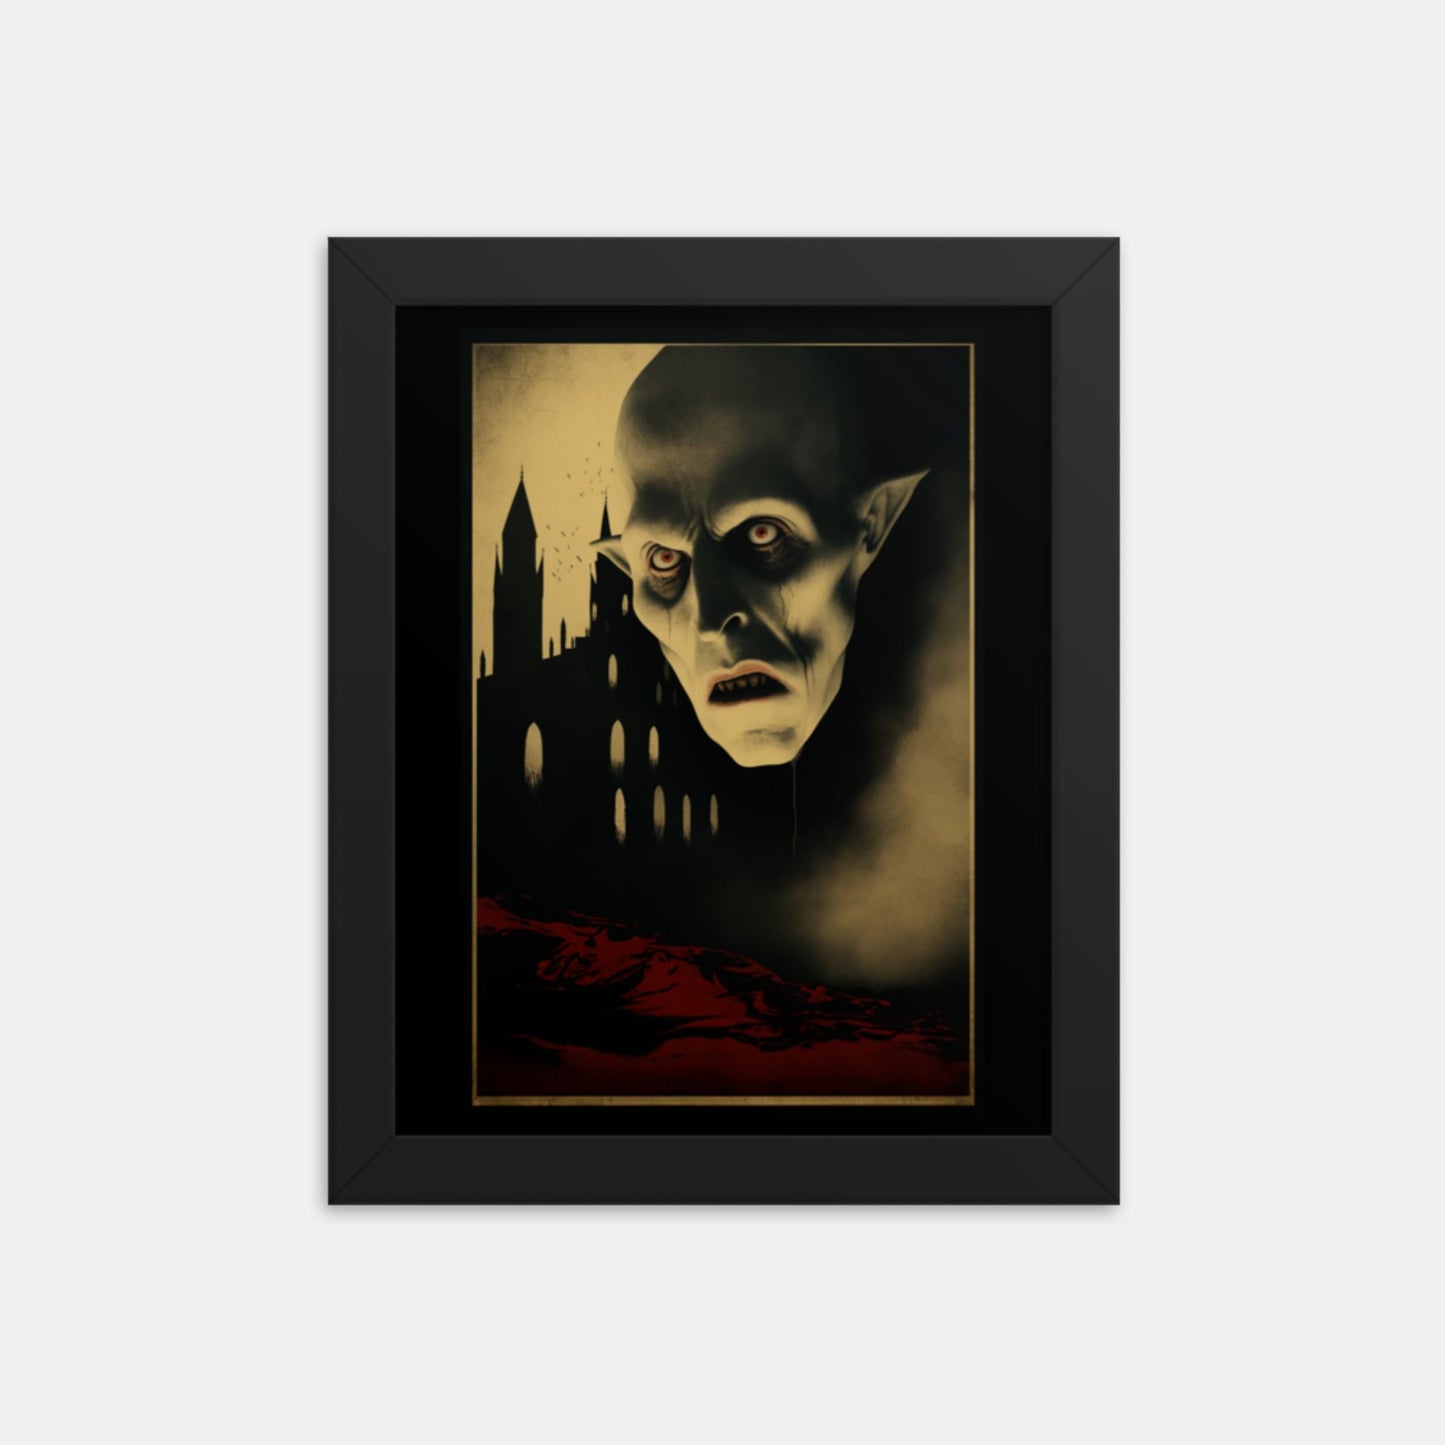 Nosferatu, a creature of darkness. Tribute Framed Print